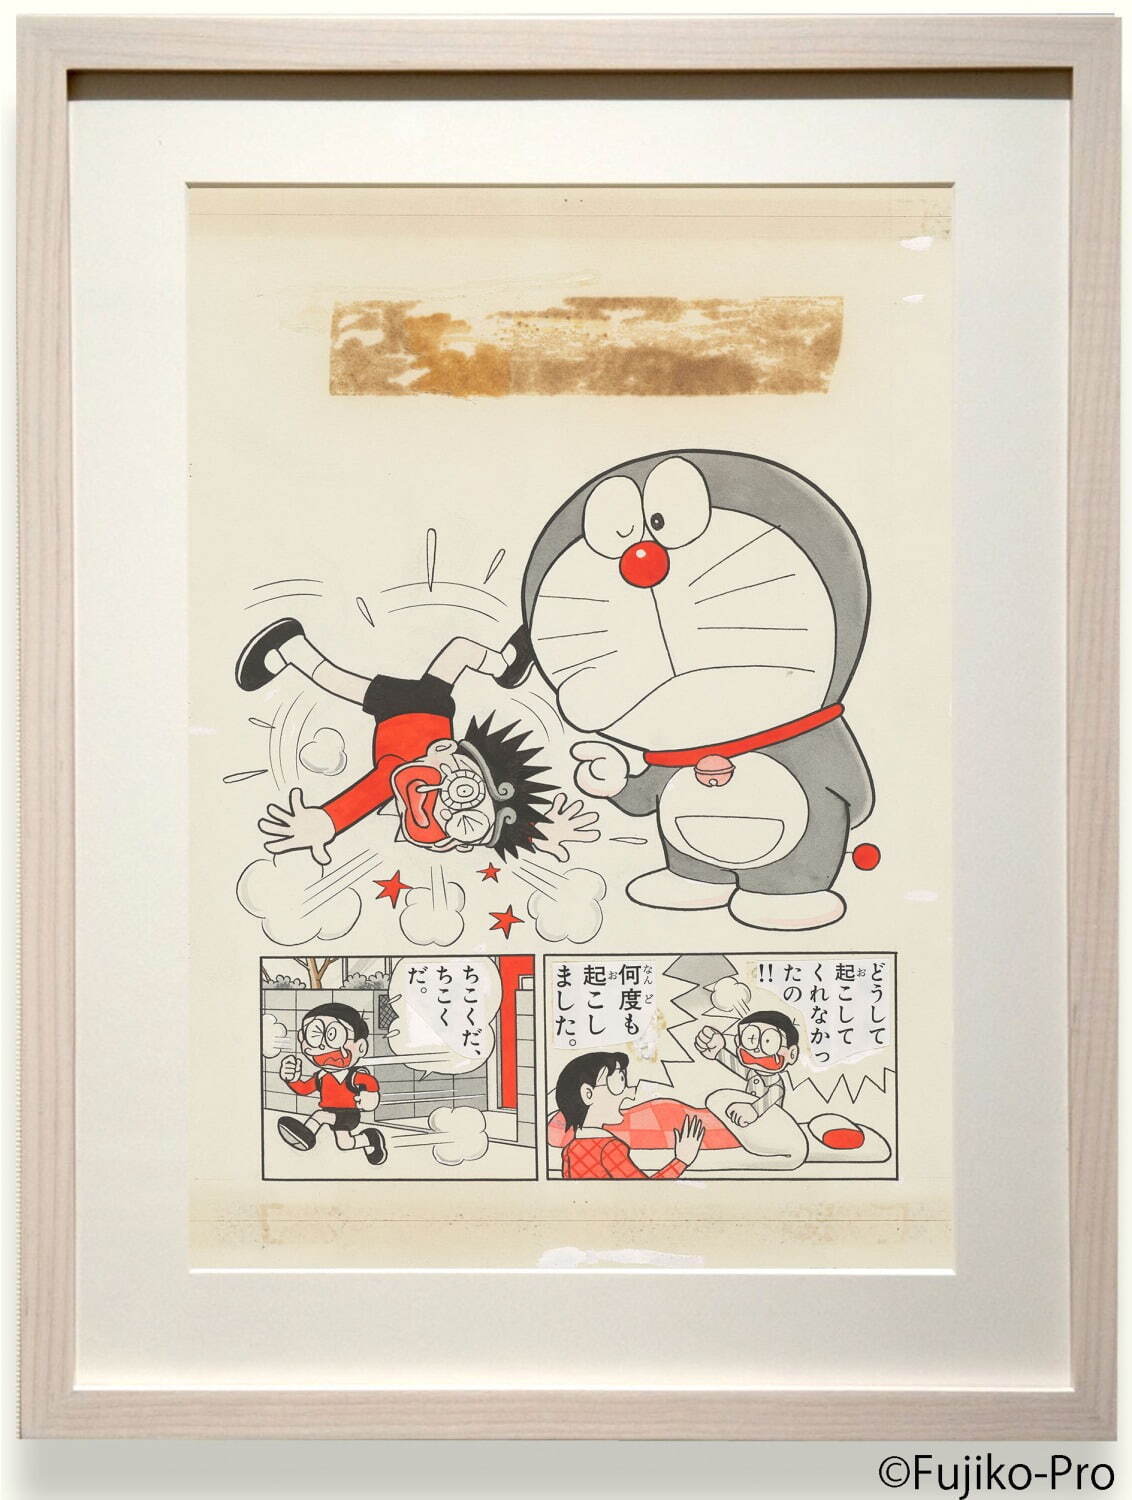 『ドラえもん』「ごくうリング」(1986年「小学二年生」)